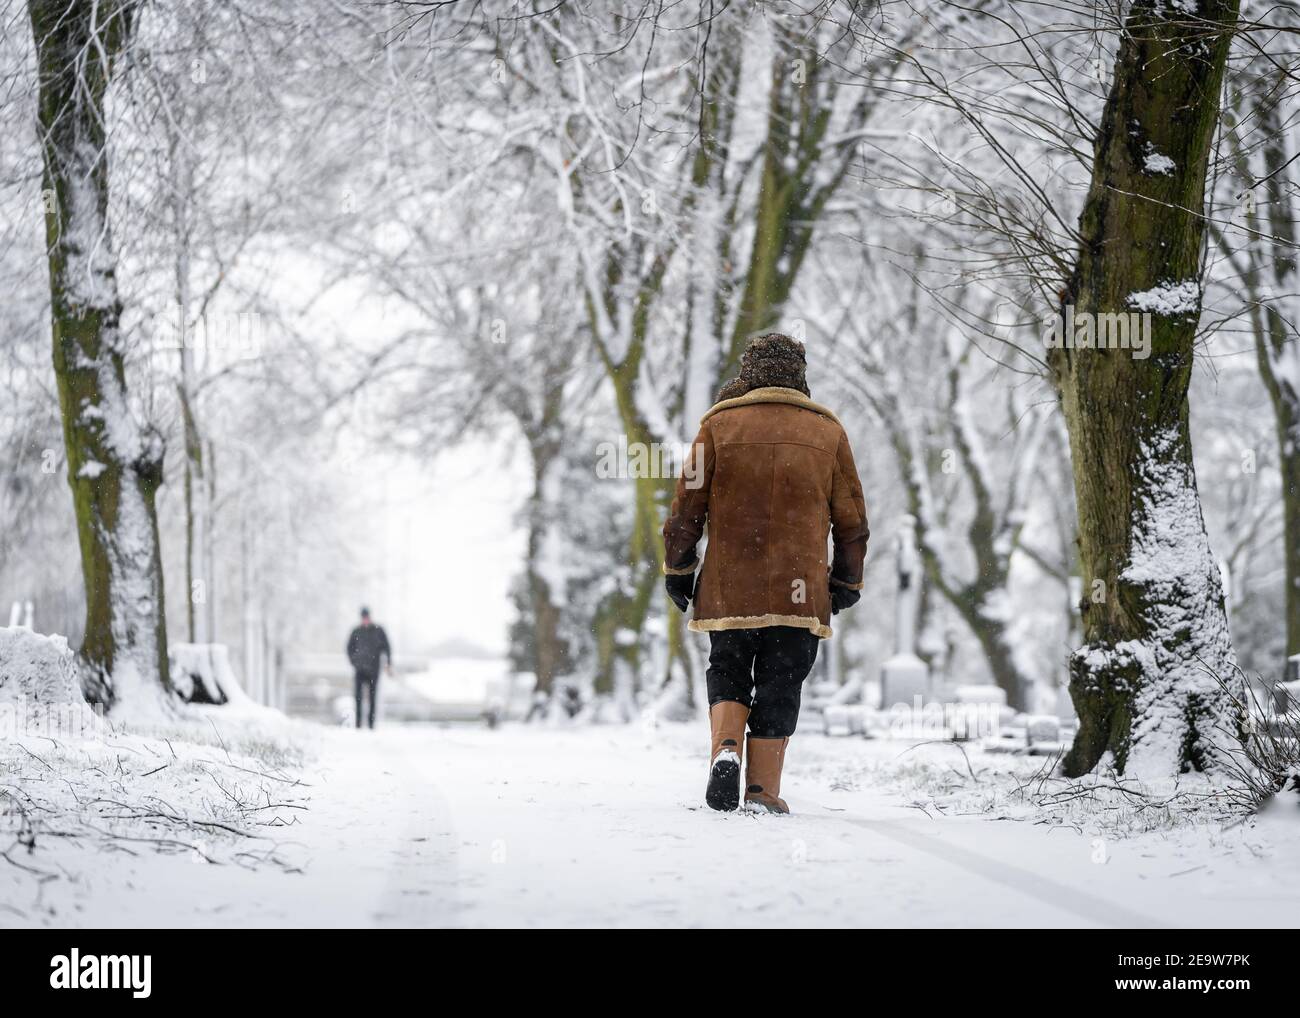 Mann, der im Winter auf schneebedecktem Weg ging, wickelte sich ein Warm in Mantel und Hut in lokalen Dorf Szene an Weihnachten Schneesturm Bedingungen mit Schnee fa Stockfoto